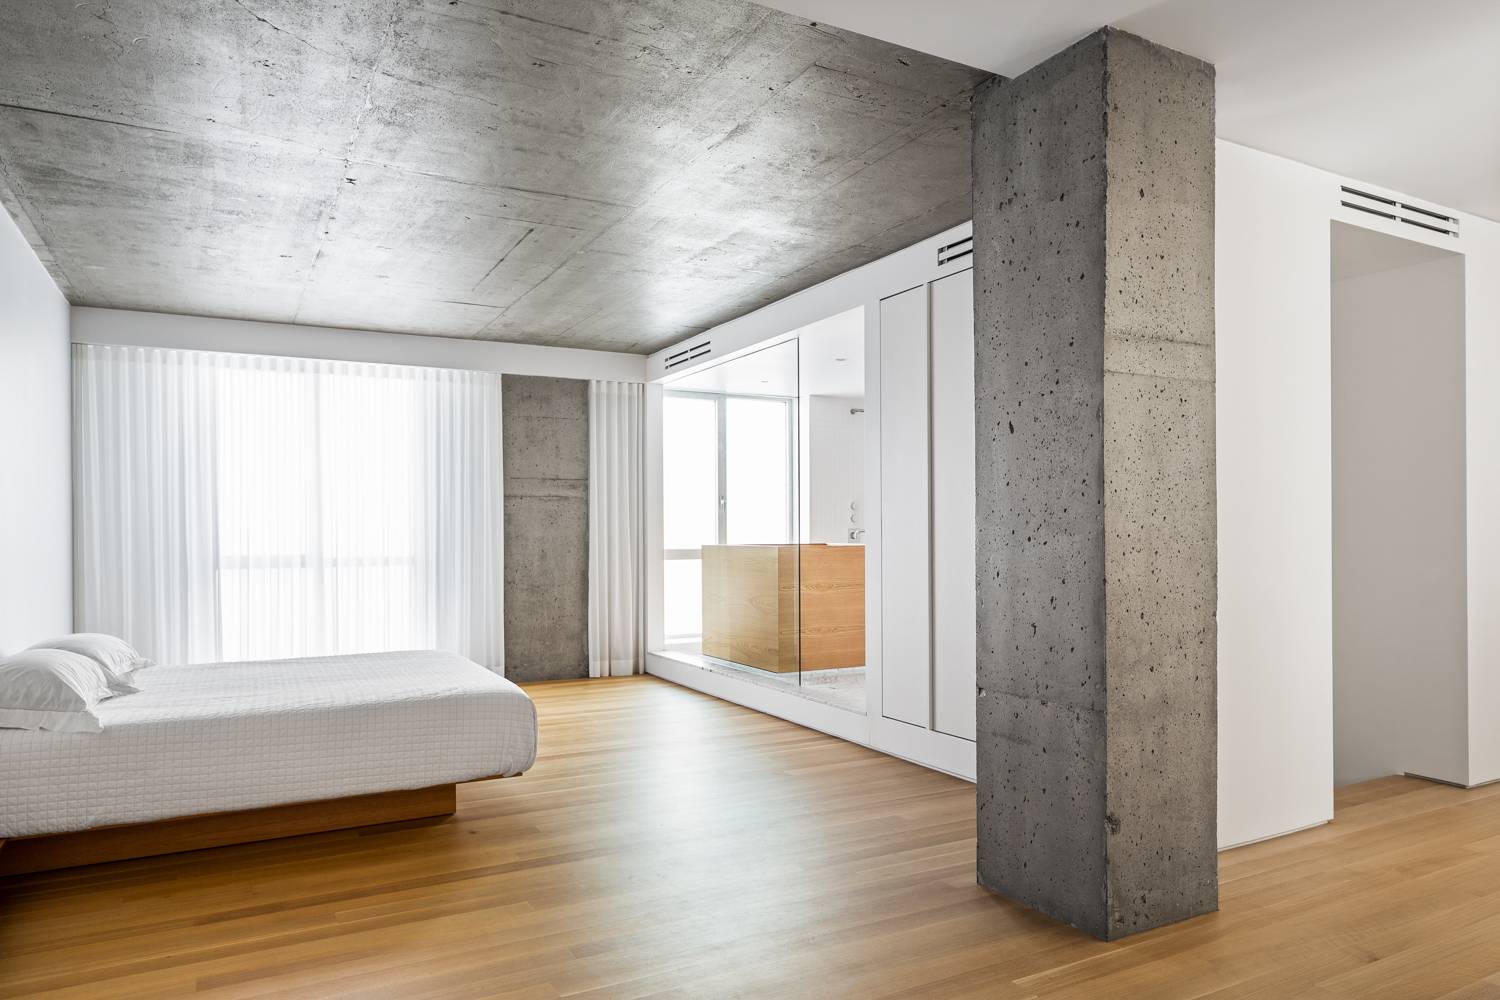 Бетонные стены в интерьере: сочетание фактур, создание эффекта бетона, применение в оформлении квартир и домов, советы дизайнеров